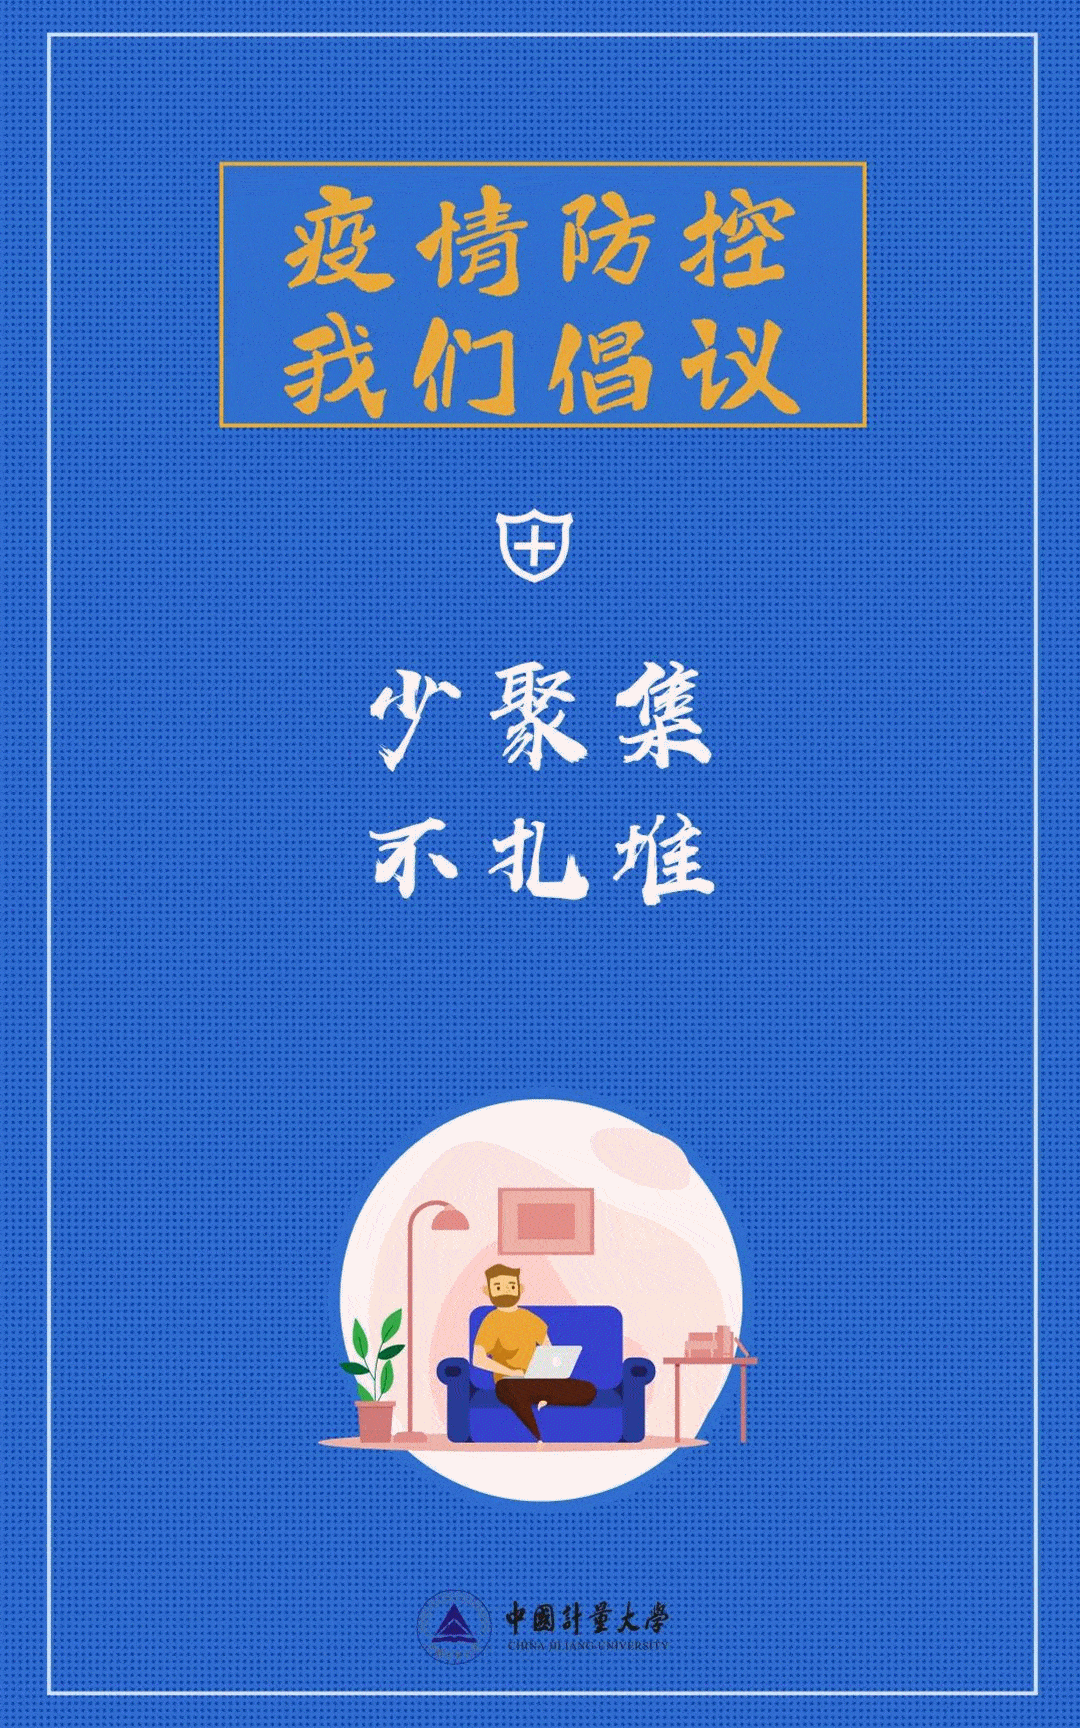 中国计量大学制作了疫情防控系列海报,时刻告诫同学们要注意个人卫生